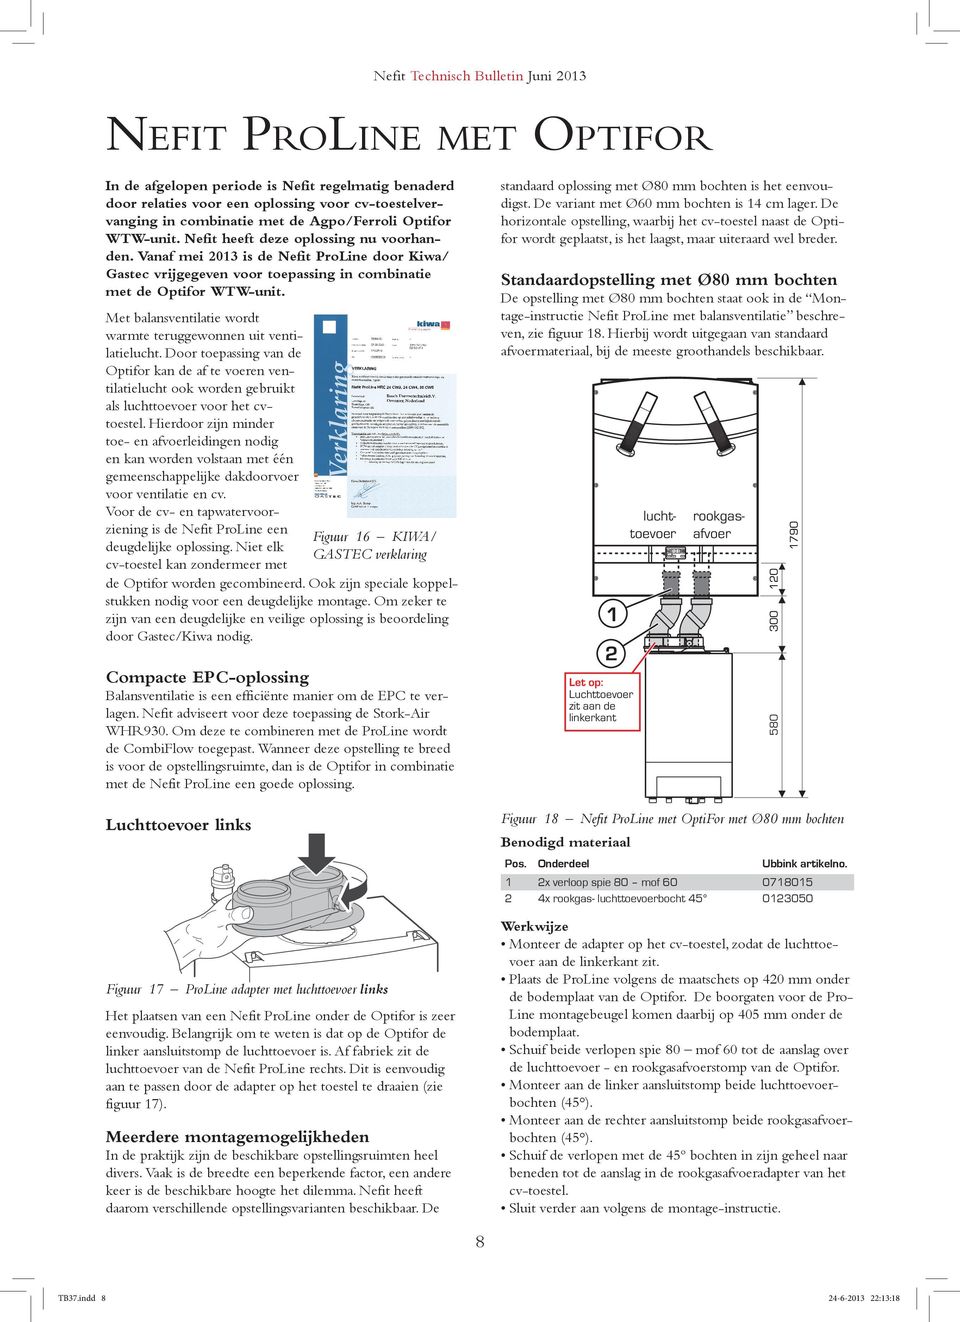 Vanaf mei 2013 is de Nefit ProLine door Kiwa/ Gastec vrijgegeven voor toepassing in combinatie met de Optifor WTW-unit. Met balansventilatie wordt warmte teruggewonnen uit ventilatielucht.